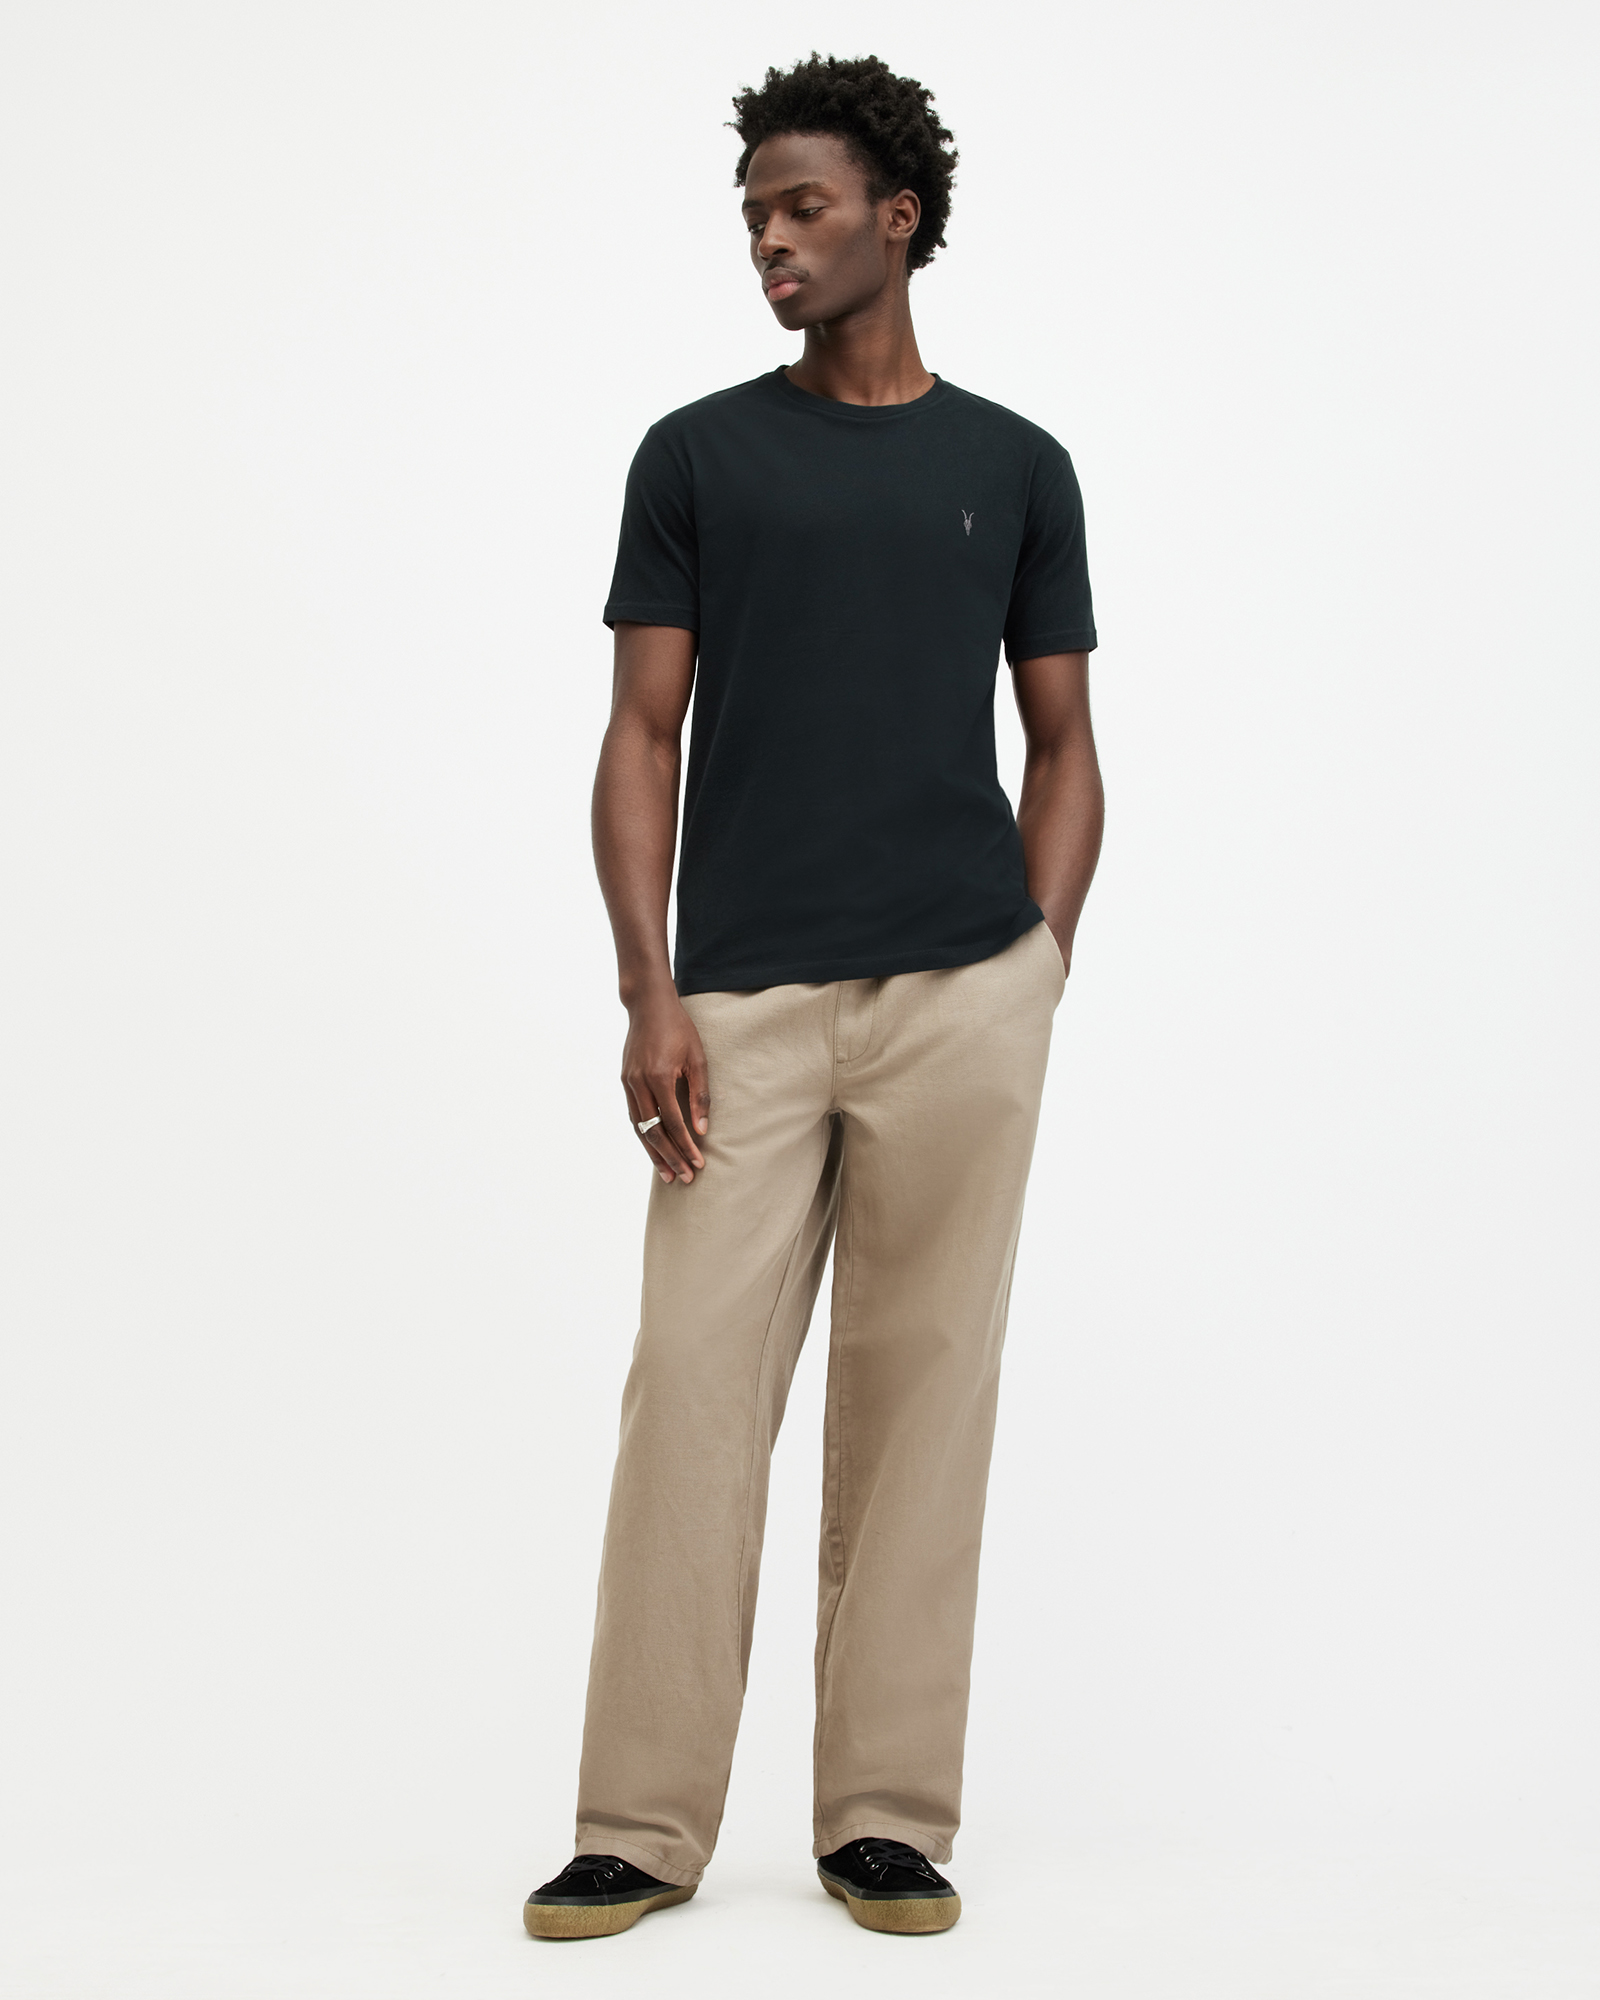 AllSaints Men's Regular Fit Cotton Slim Brace Tonic Short Sleeve Crew T-Shirt, Black, Size: L